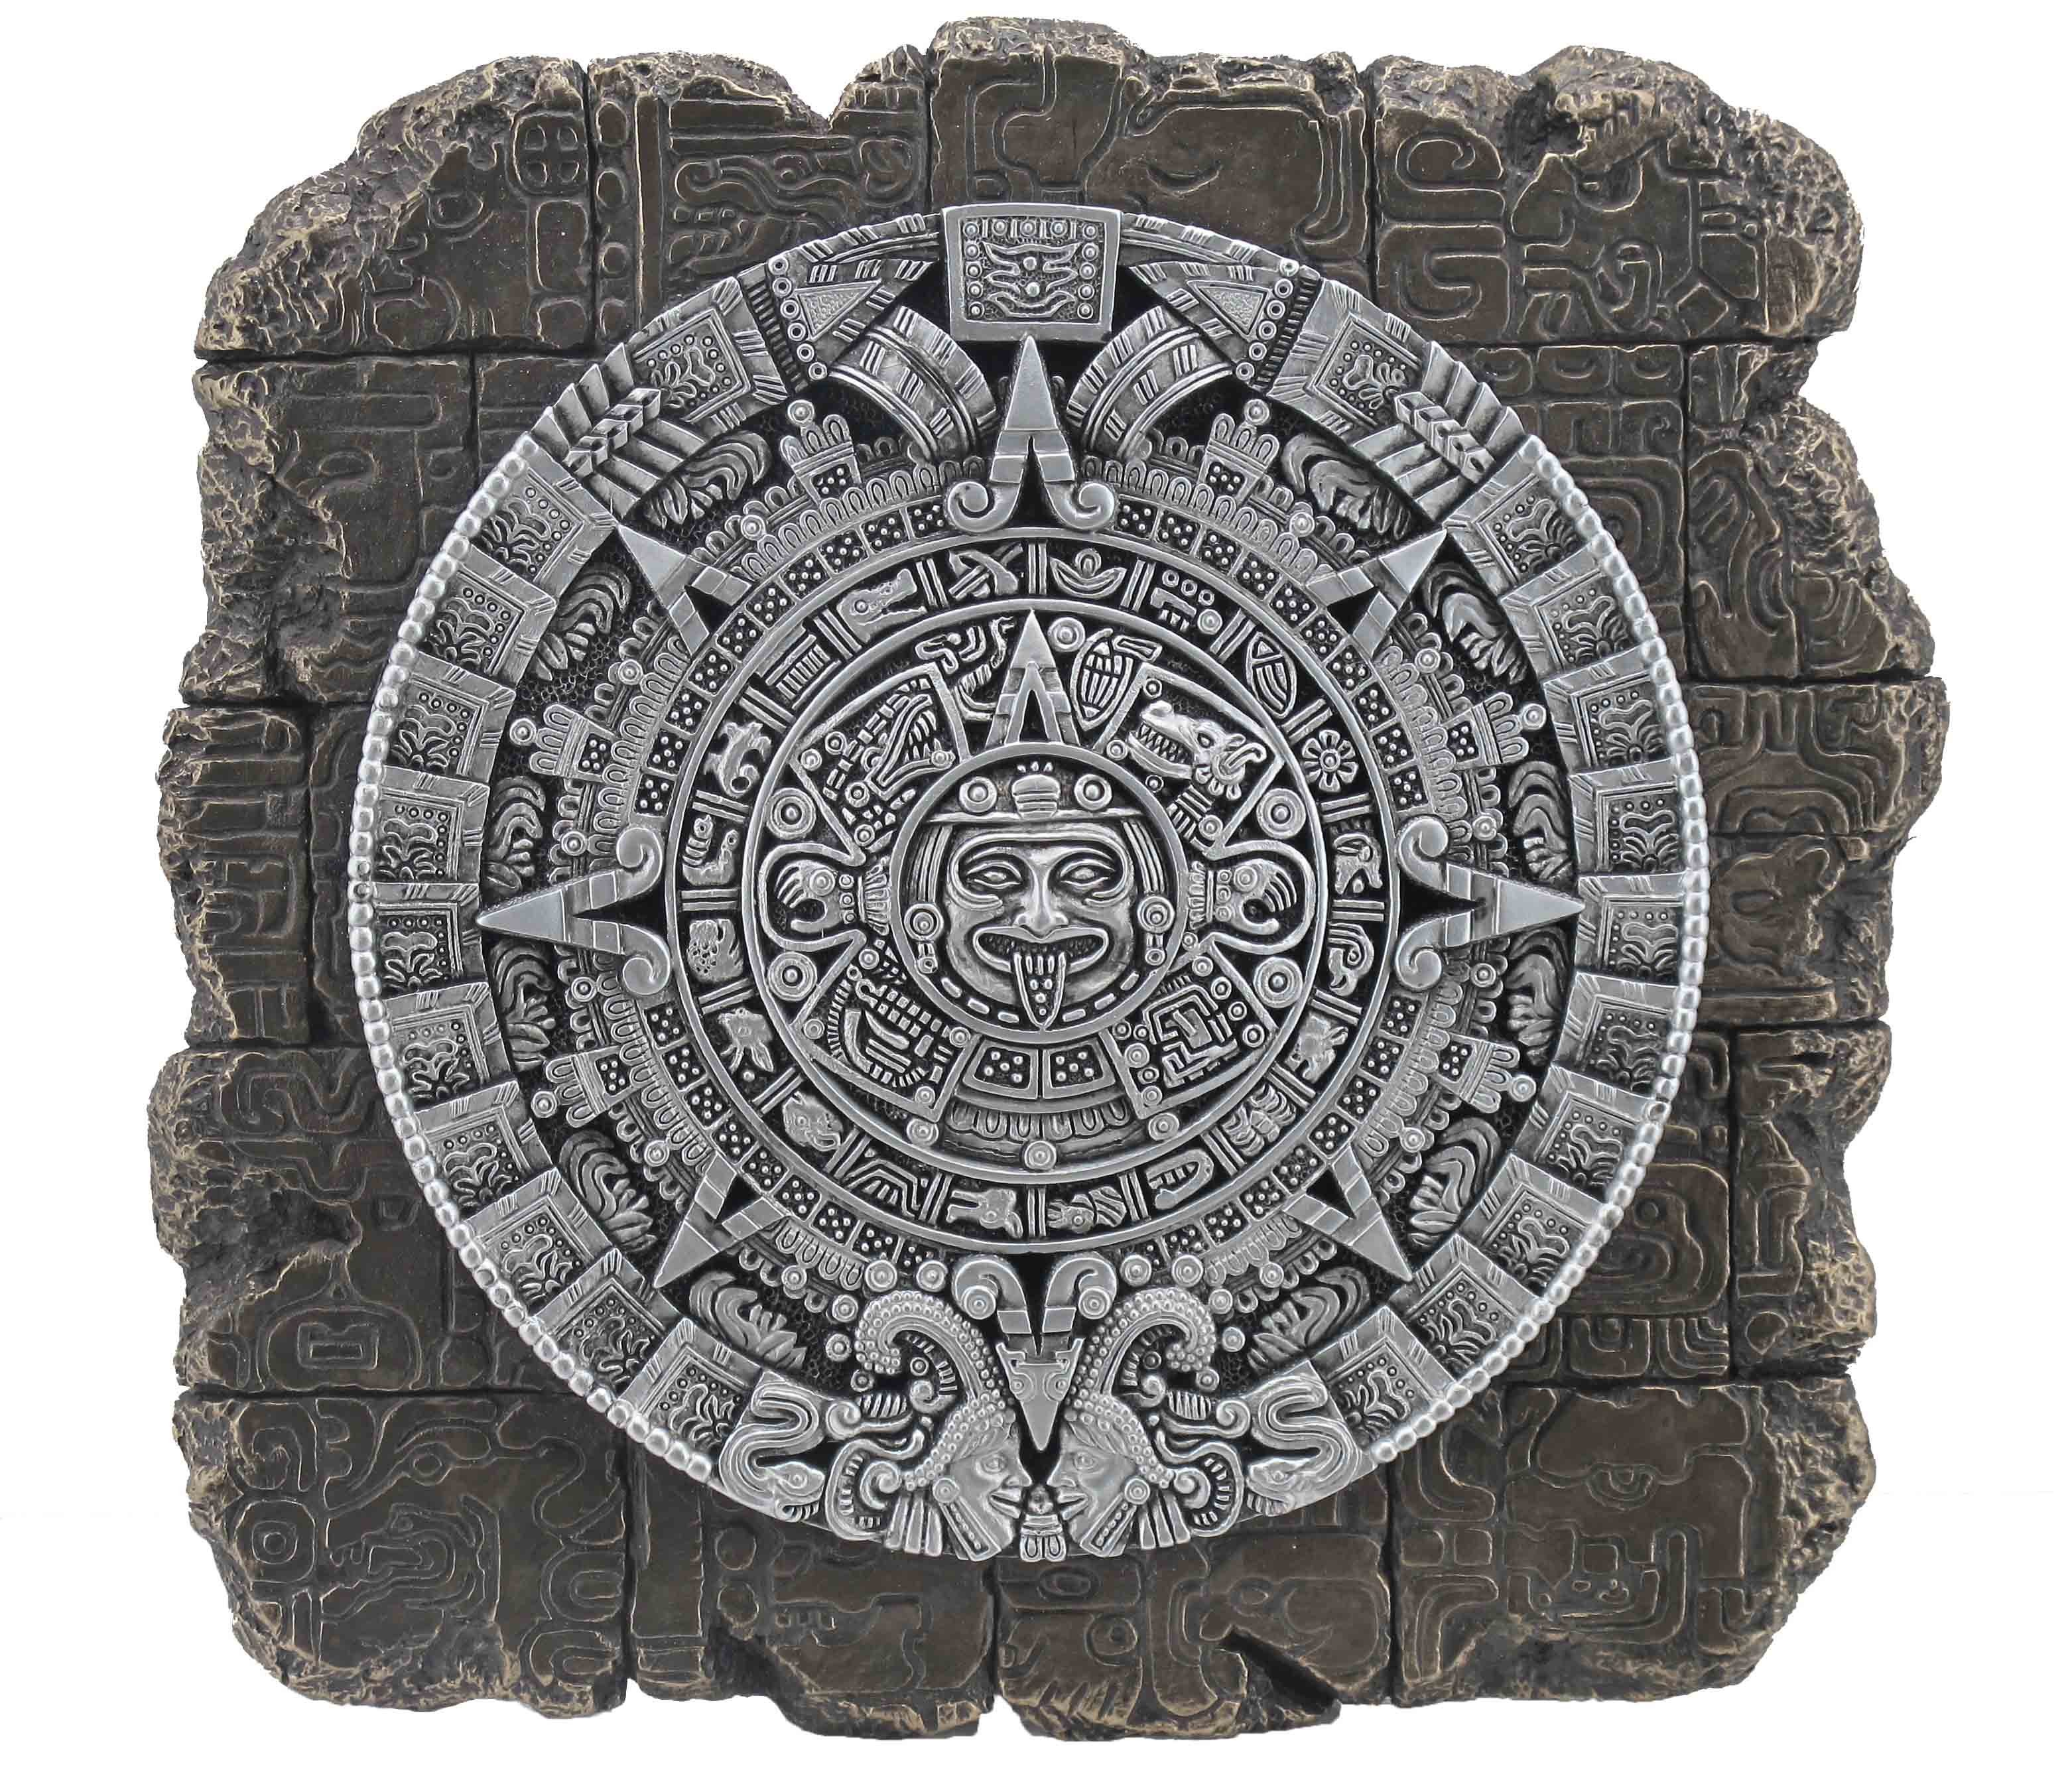 Hand Vogler bronziert by direct ca. Aztekenkalender bronziert, LxBxH Veronese, Gmbh - Wanddekoobjekt 23x22x4cm Wandrelief von